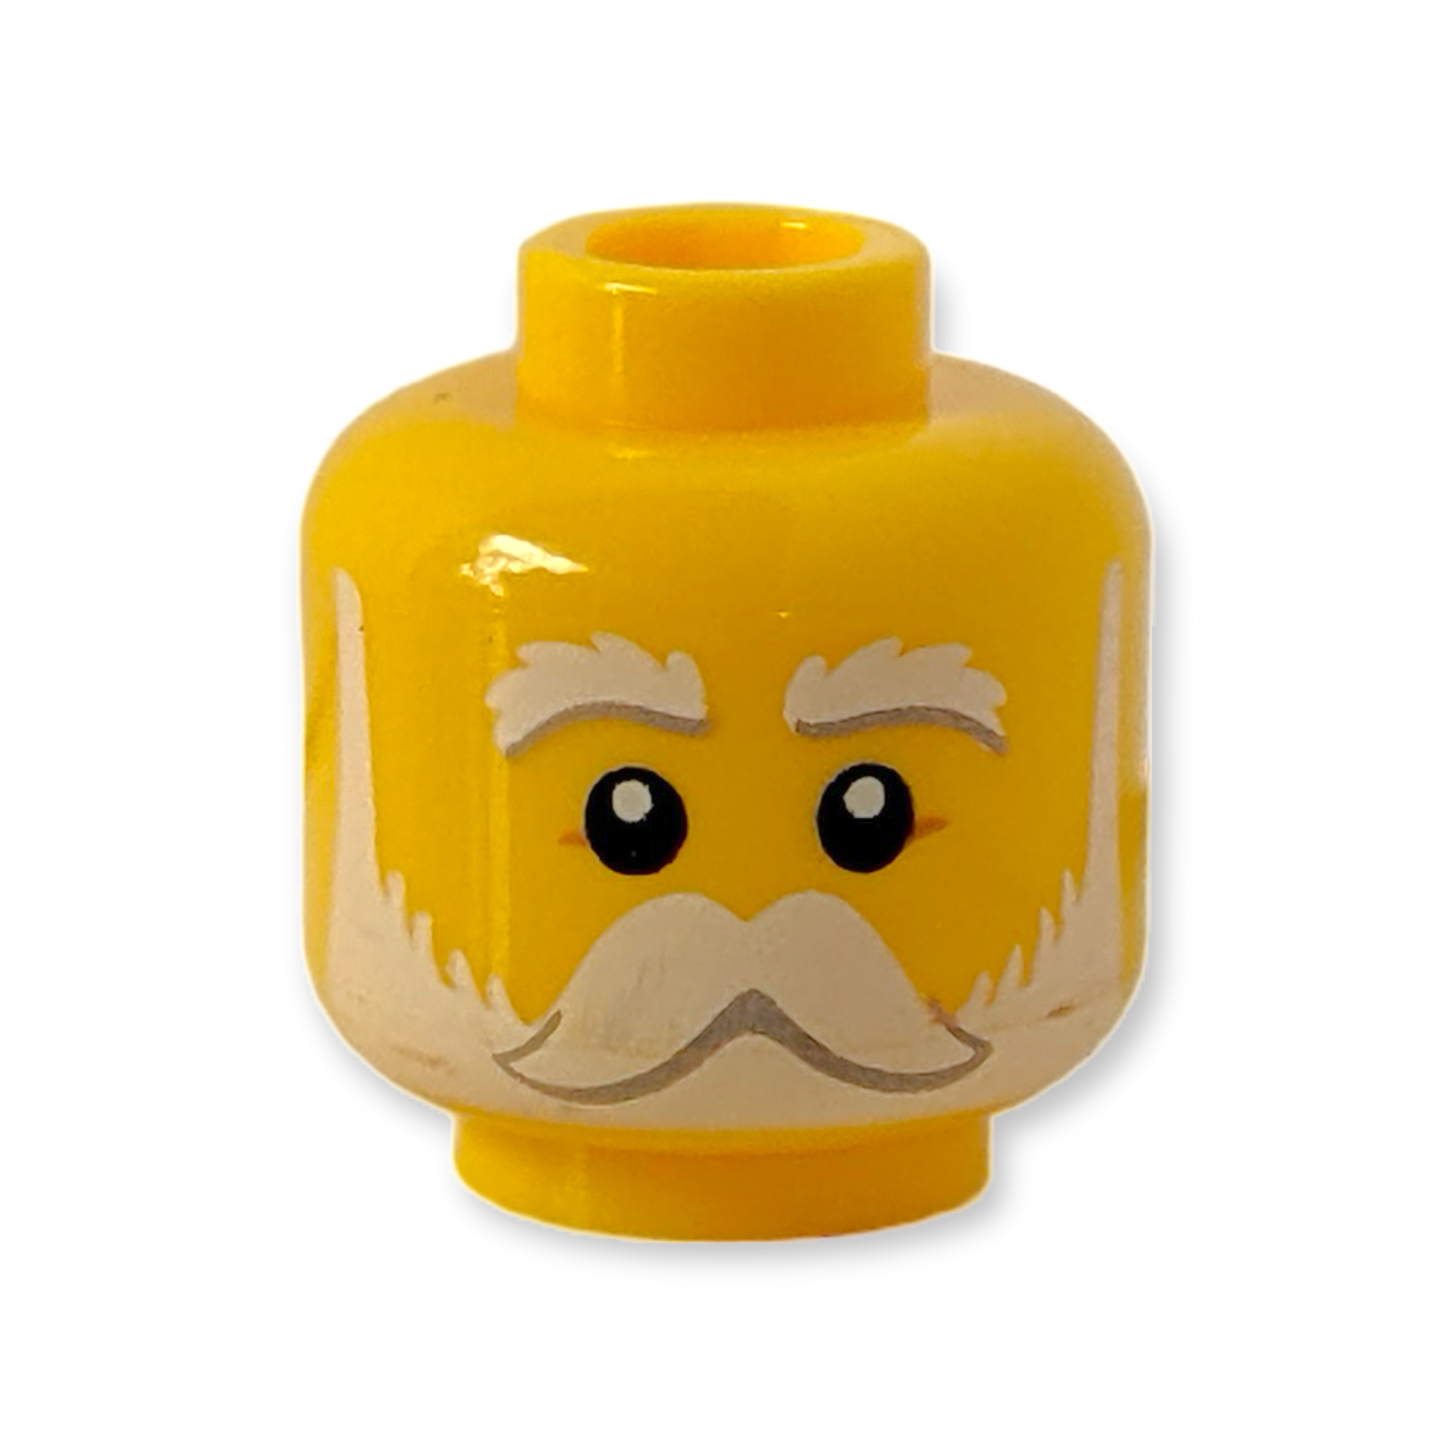 LEGO Head - 3087 Weiße Augenbrauen Schnurrbart und Bart